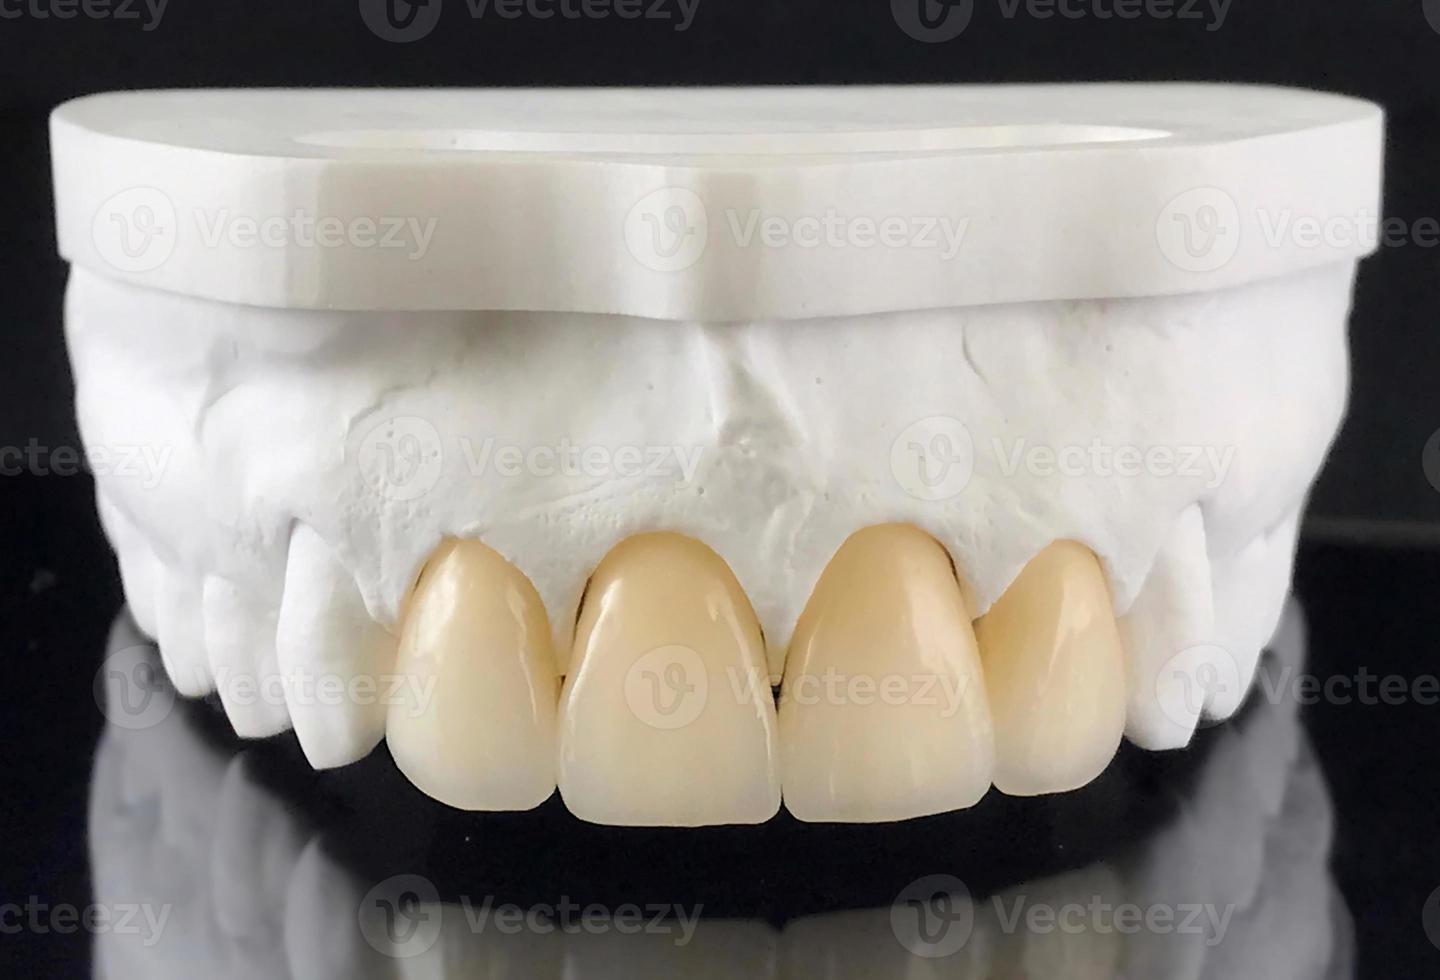 zirkoniumoxid kronor med full porslin i de plåster modell för dental behandling. restaurering av tänder på de övre käke. produktion av dental faner i en dental laboratorium. faner foto